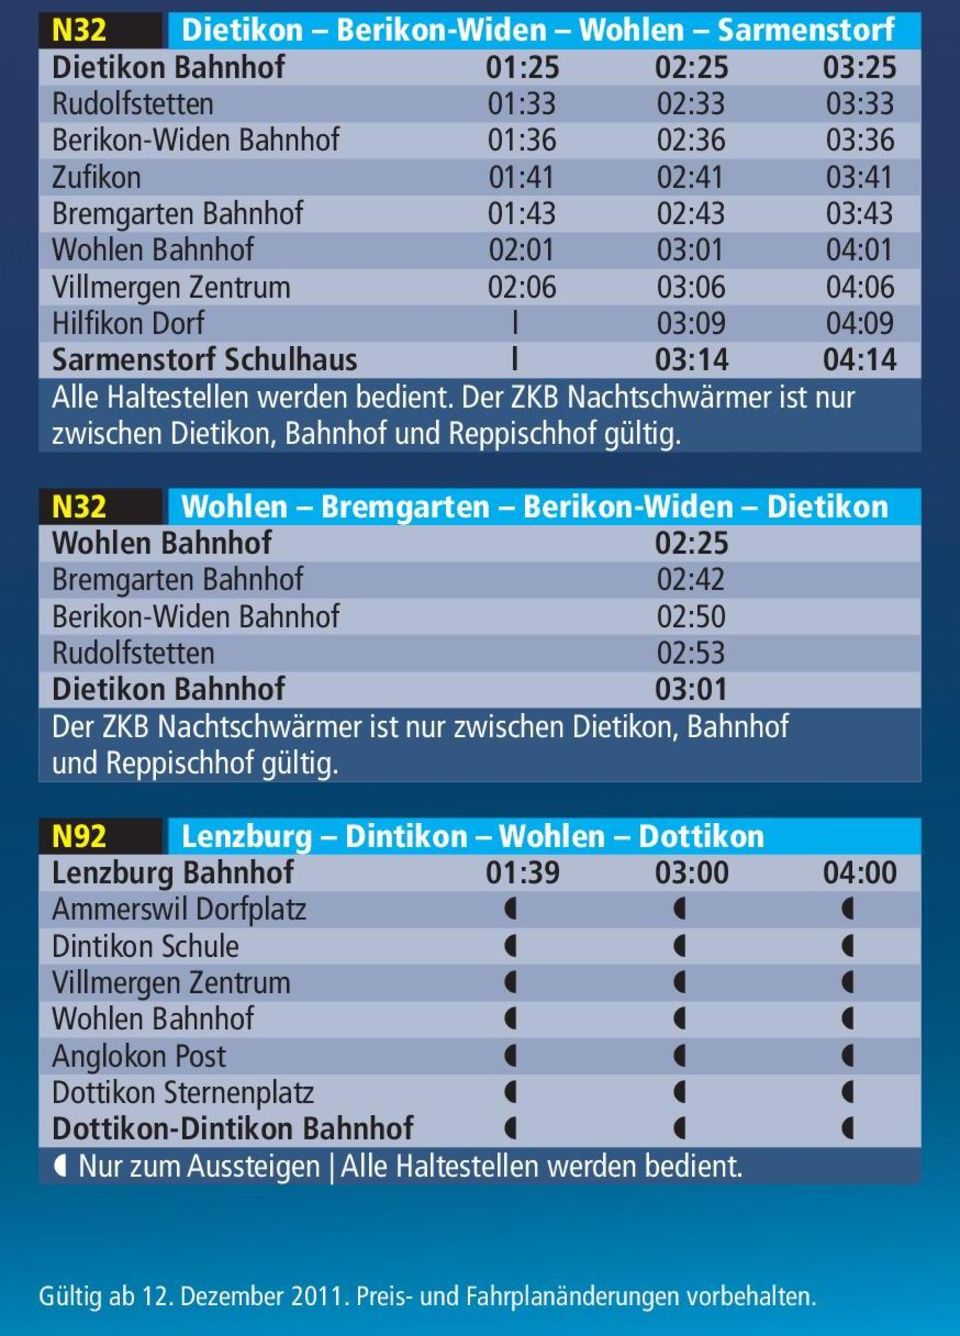 Der ZKB Nachtschwärmer ist nur zwischen Dietikon, Bahnhof und Reppischhof gültig.